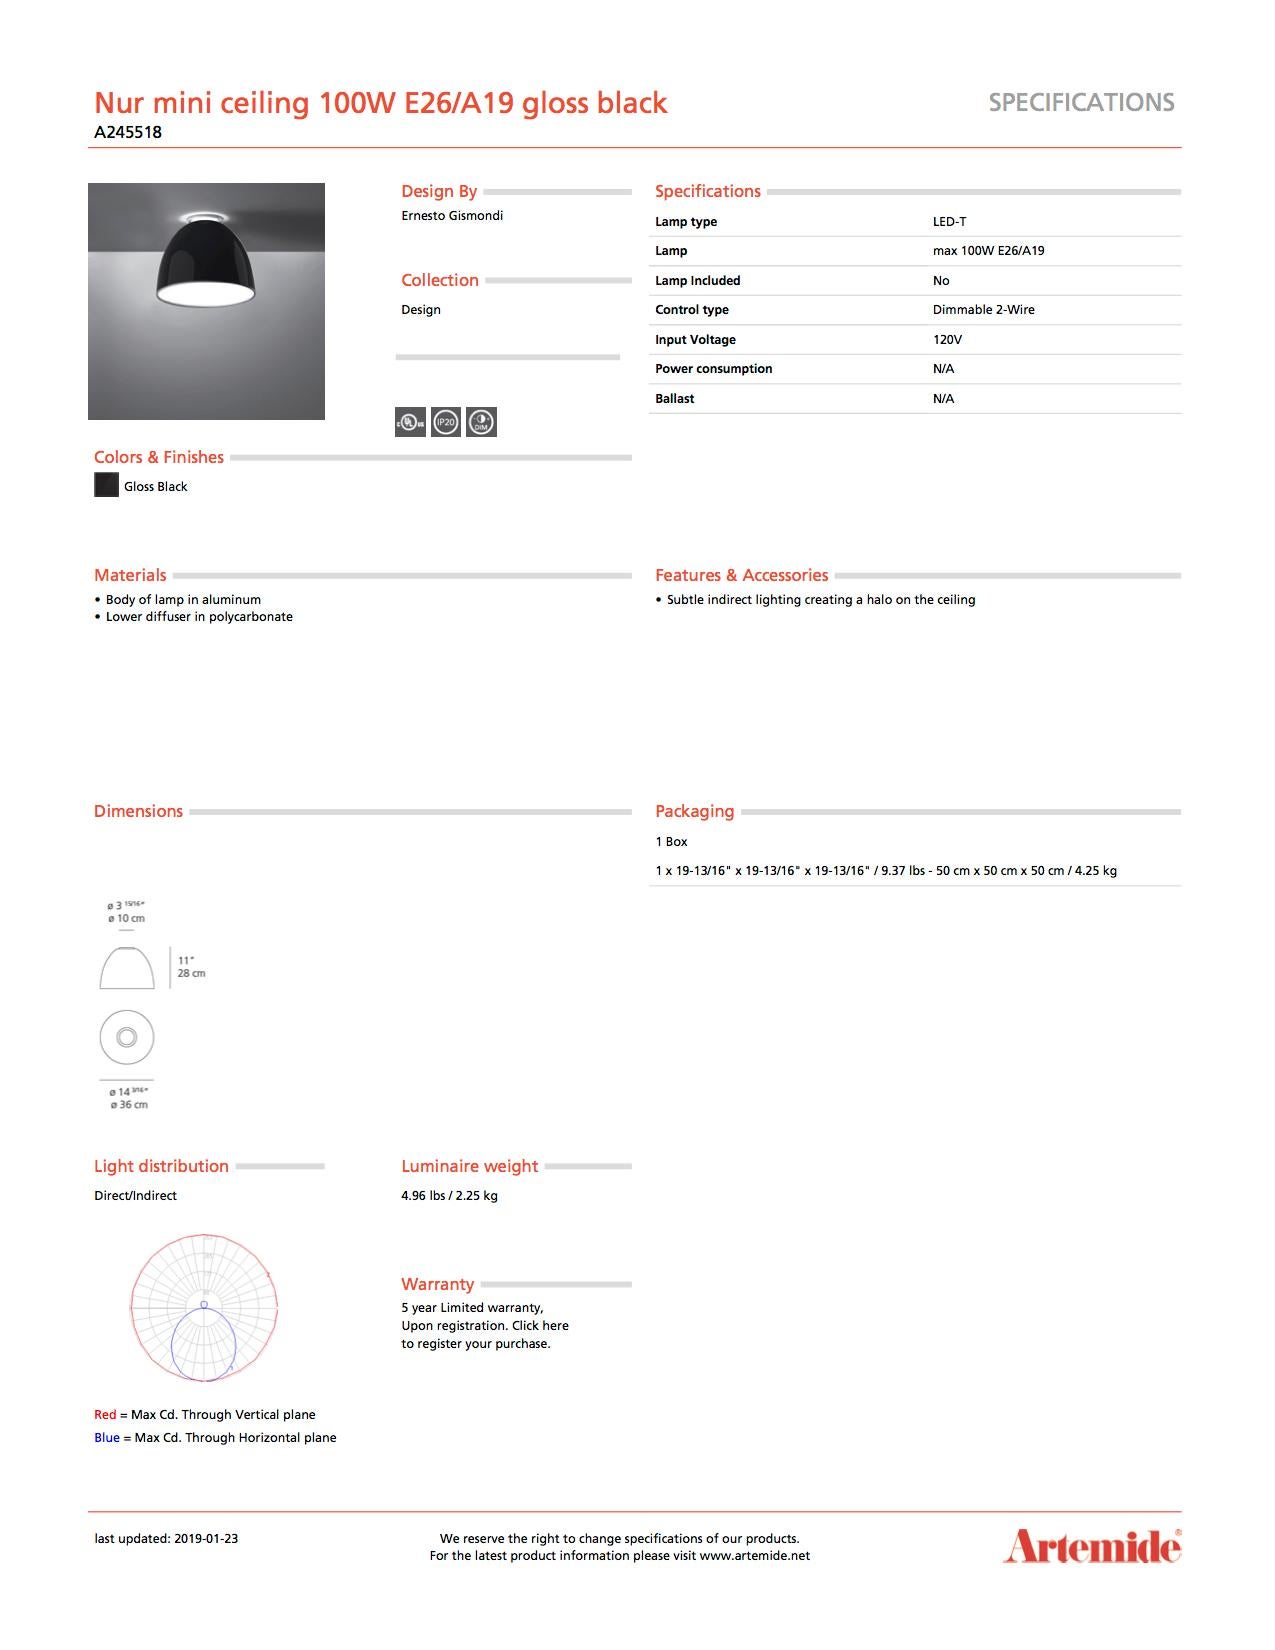 Artemide Nur Mini 100W E26/A19 Deckenleuchte in glänzendem Schwarz (Moderne) im Angebot